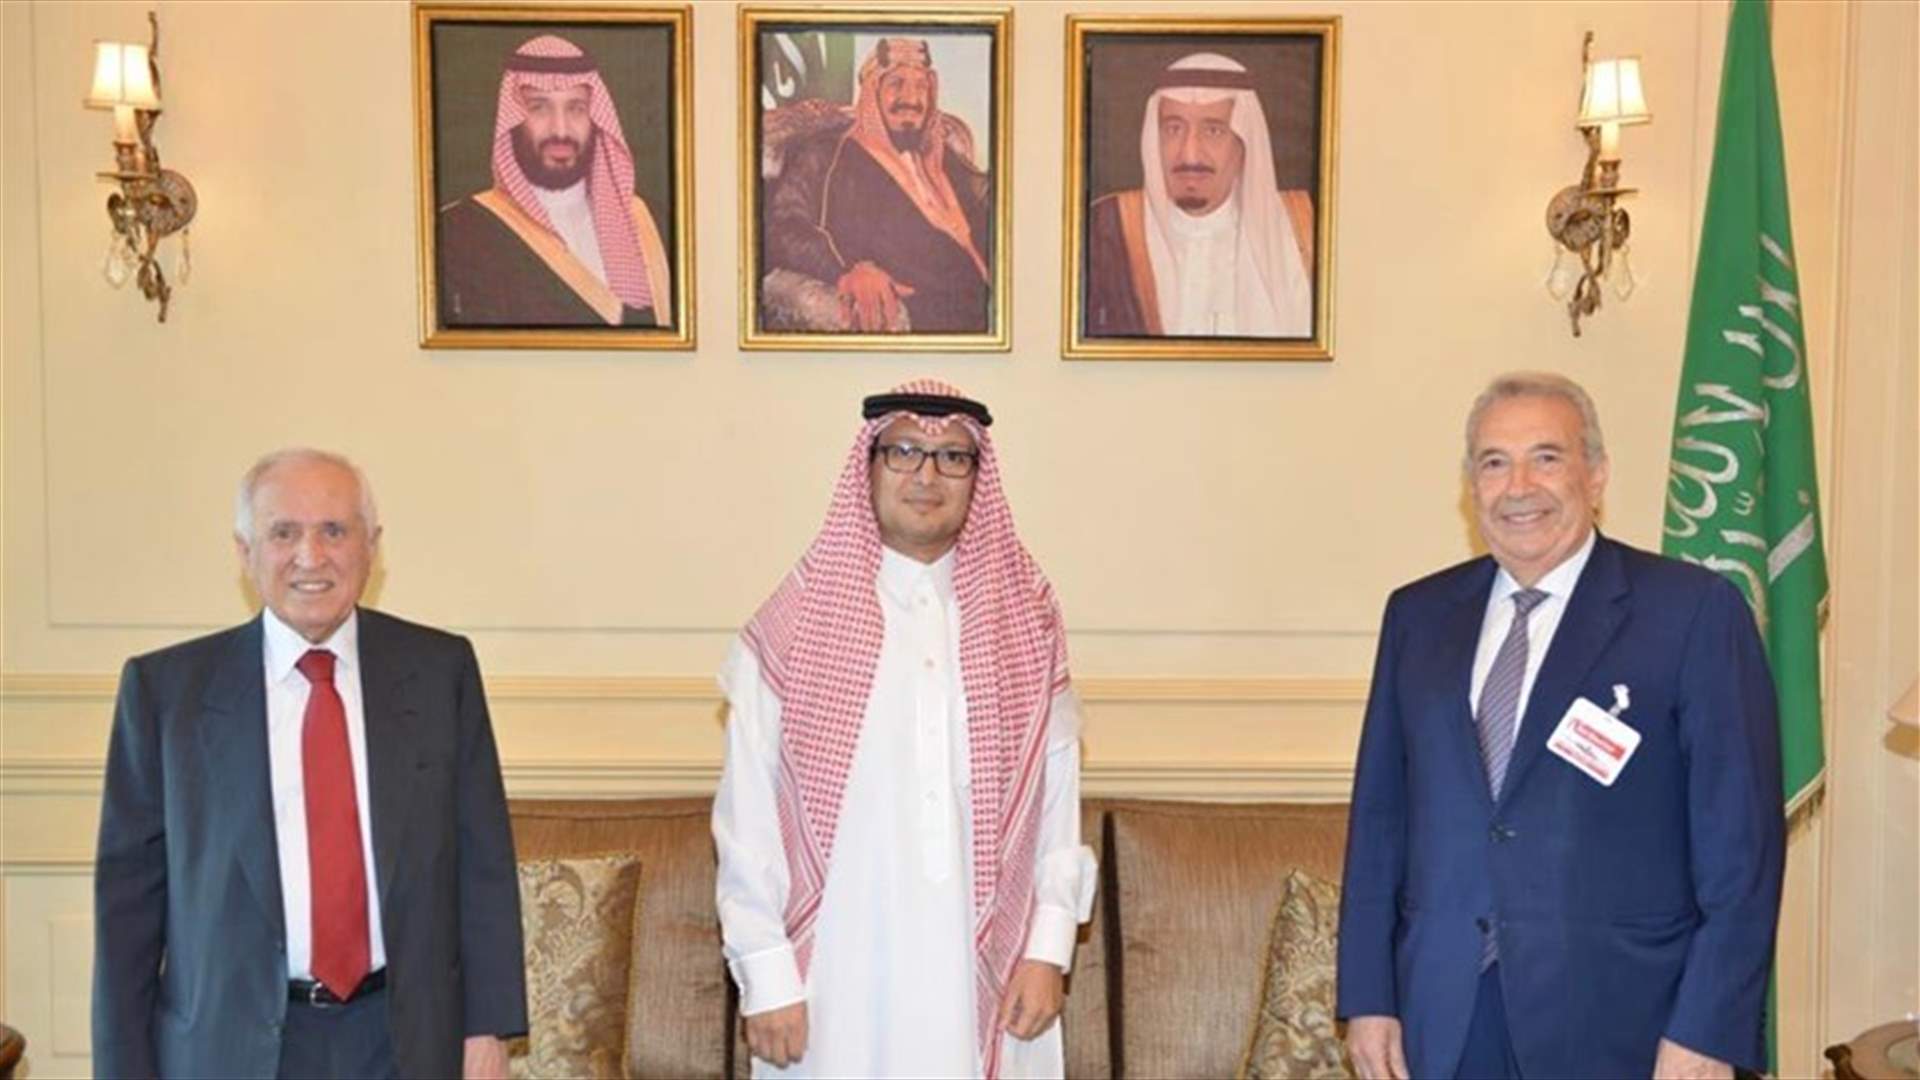 بخاري التقى رئيس مجلس الأعمال اللبناني السعودي ونائبه